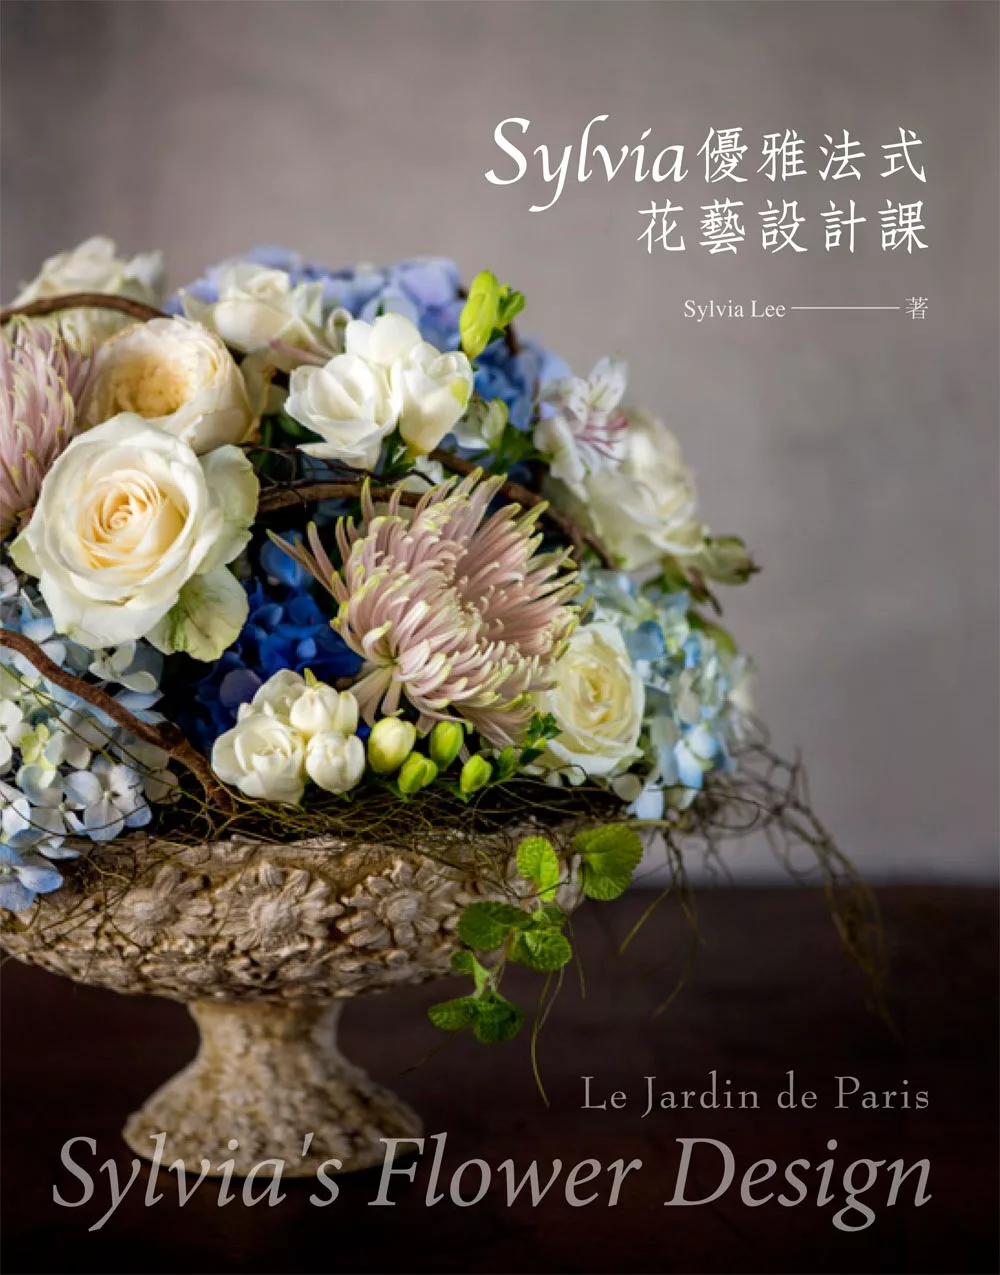 Sylvia優雅法式花藝設計課